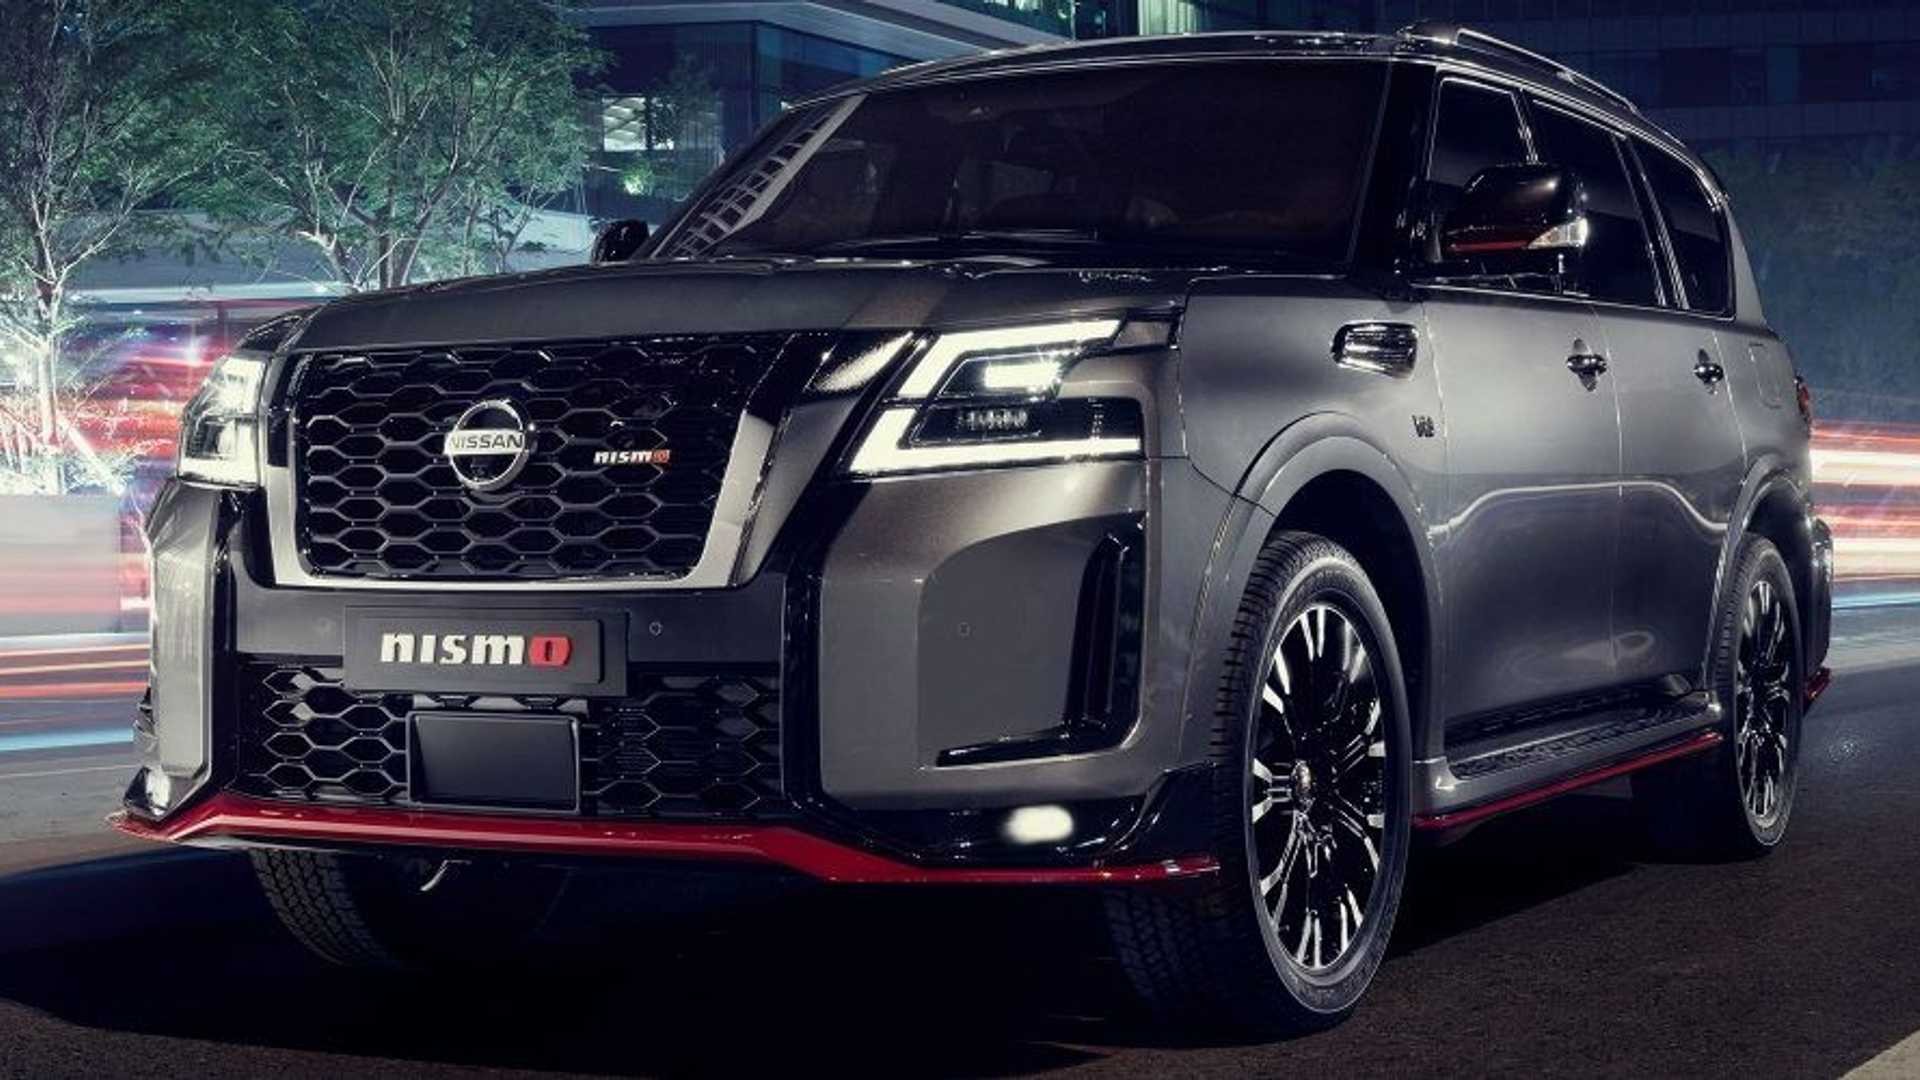 Nissan Patrol Nismo 2021: le immagini ufficiali - Autoblog